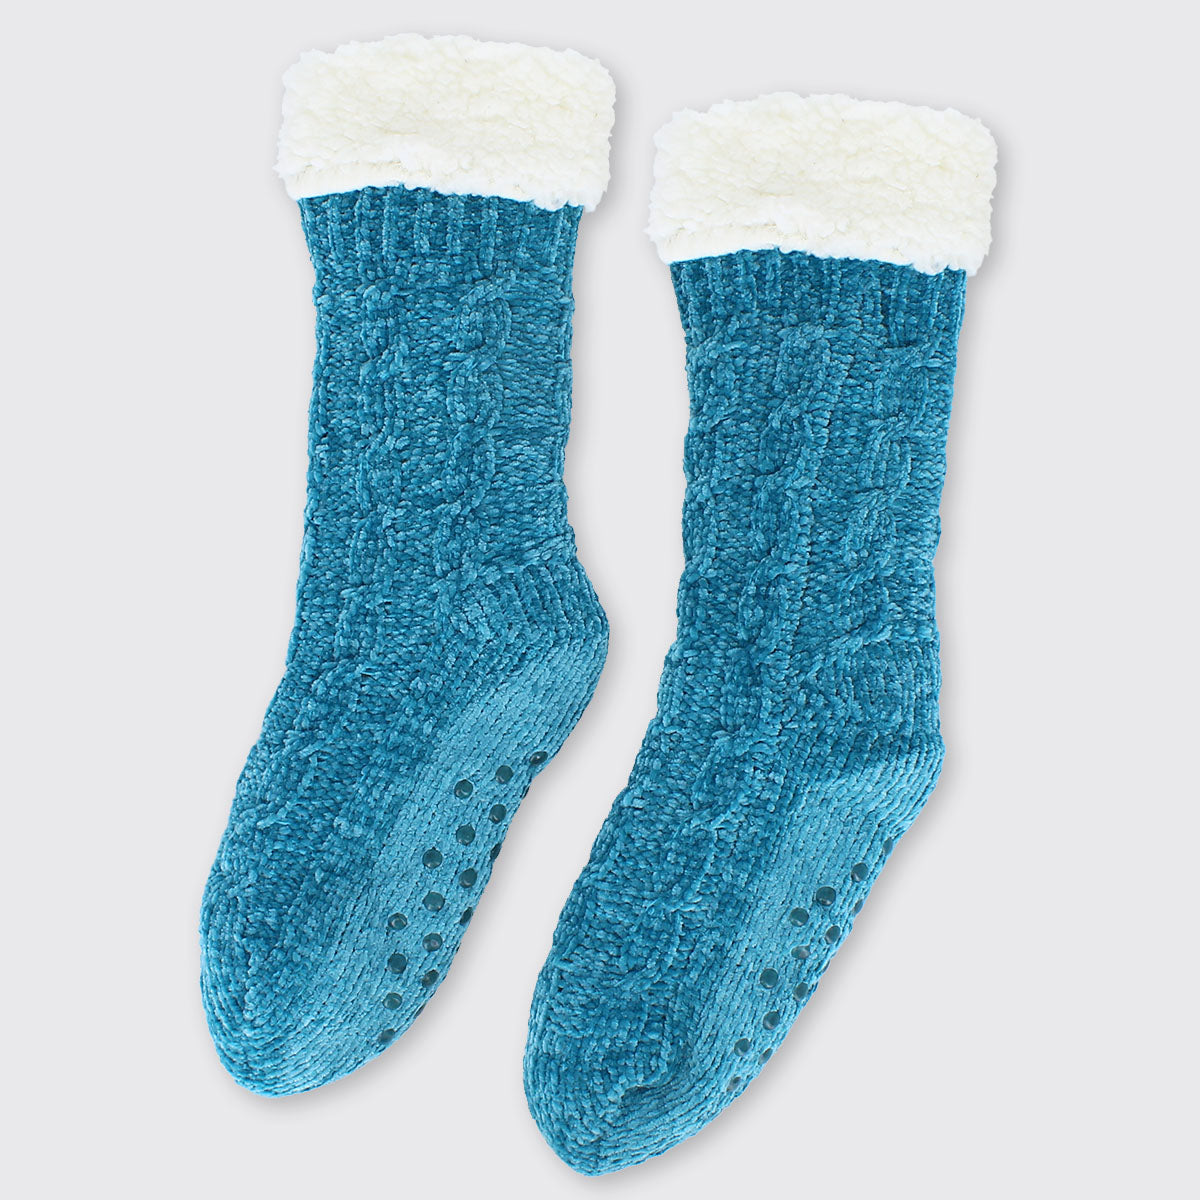 Chenille Slipper Socks - Black - 1 Pair | Support Plus